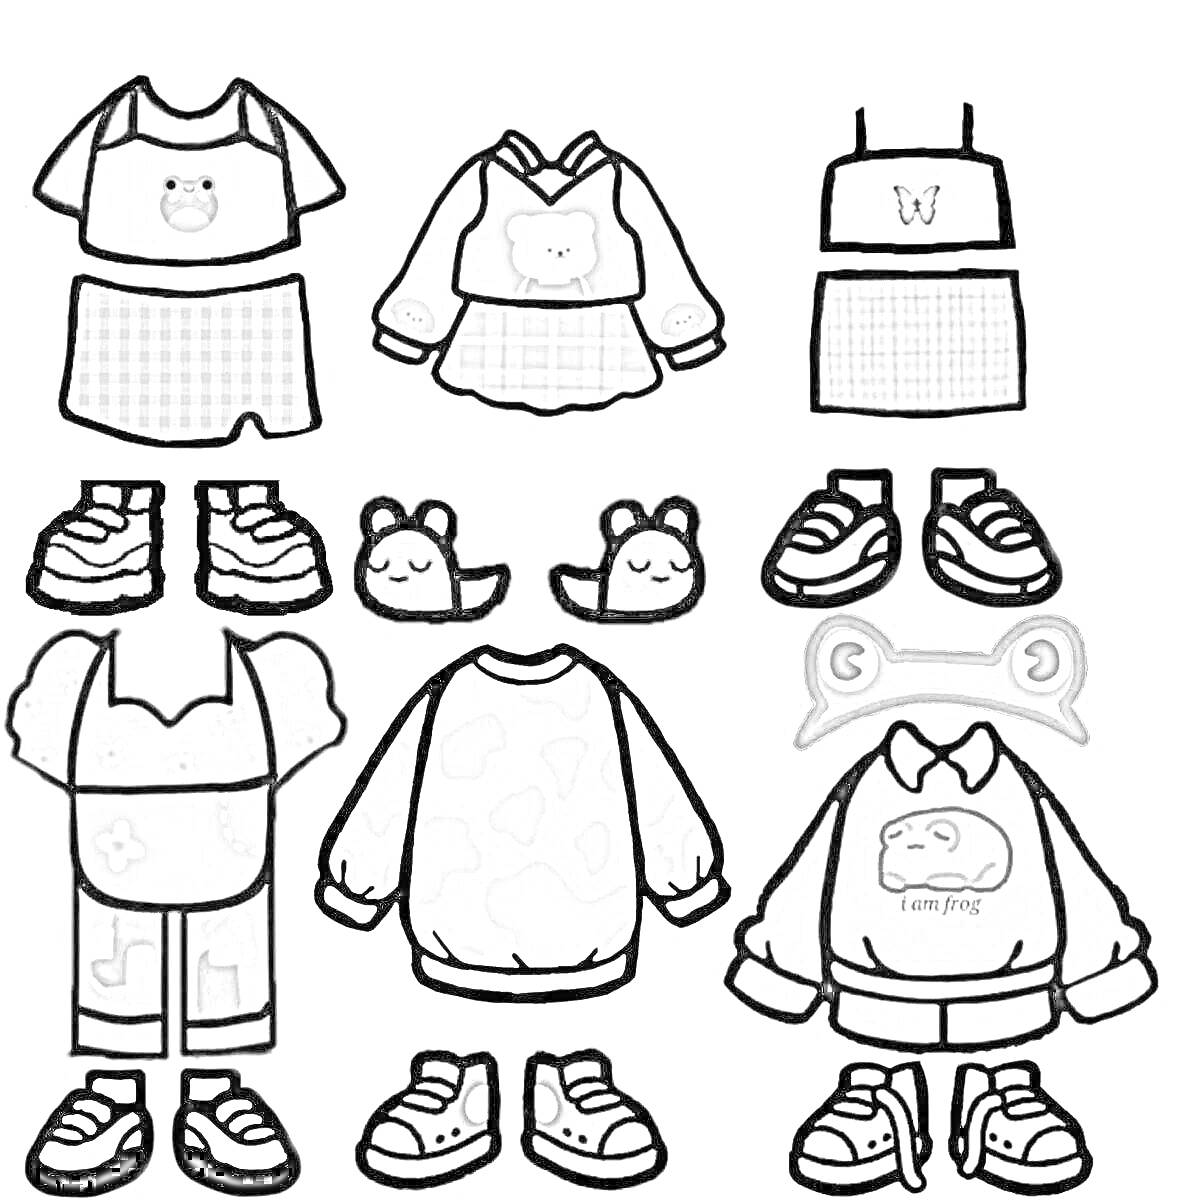 Раскраска Тока Бока персонажи с одеждой дома, включающие рубашки, юбки, толстовки, брюки, обувь, костюмы и аксессуары